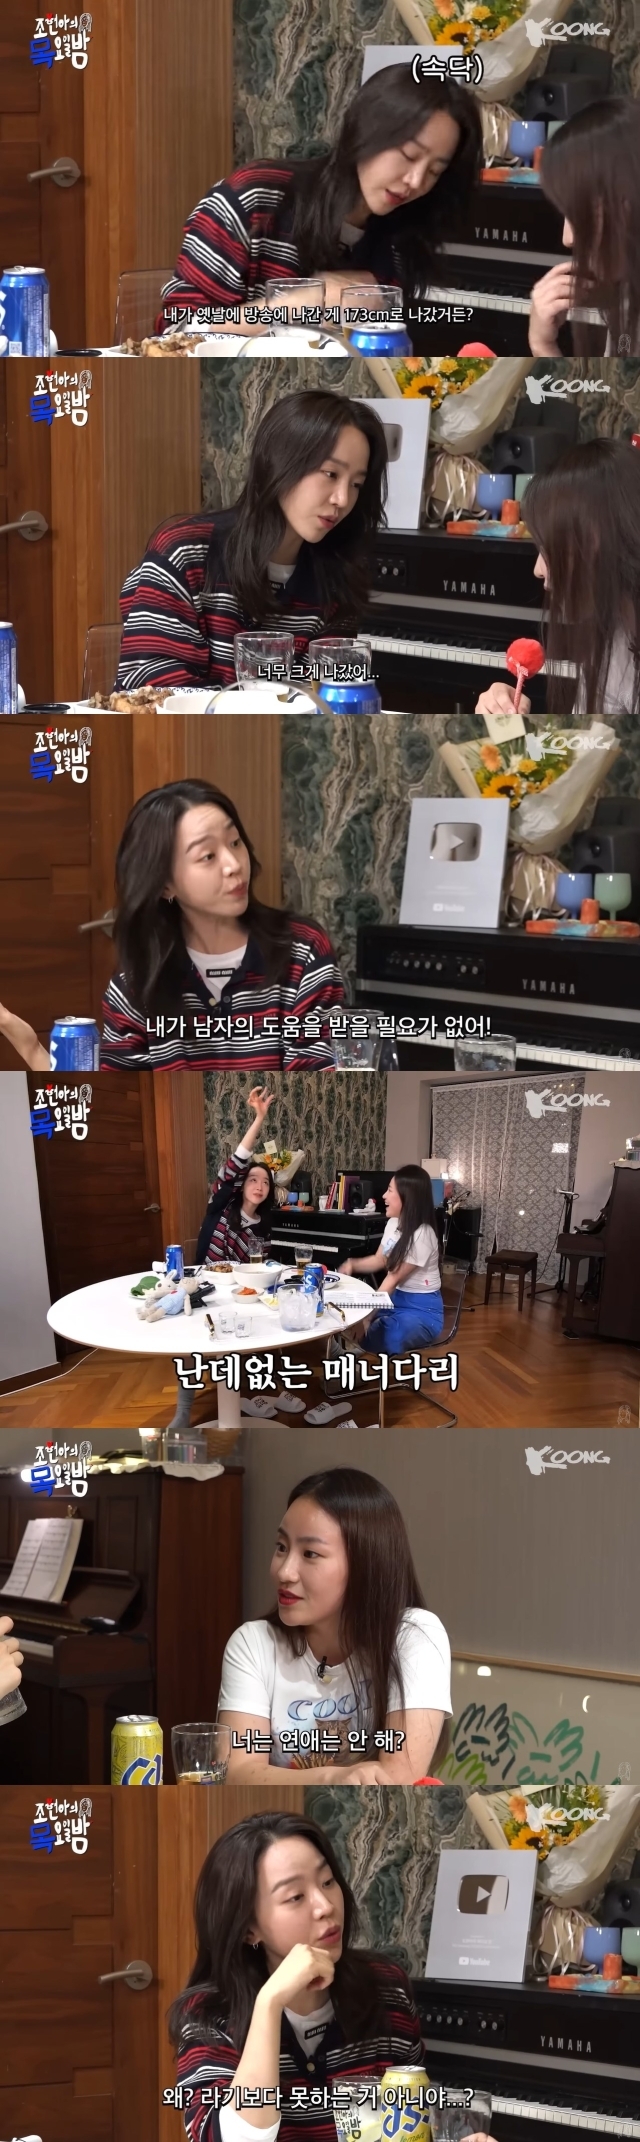 '조현아의 목요일 밤' 영상 캡처